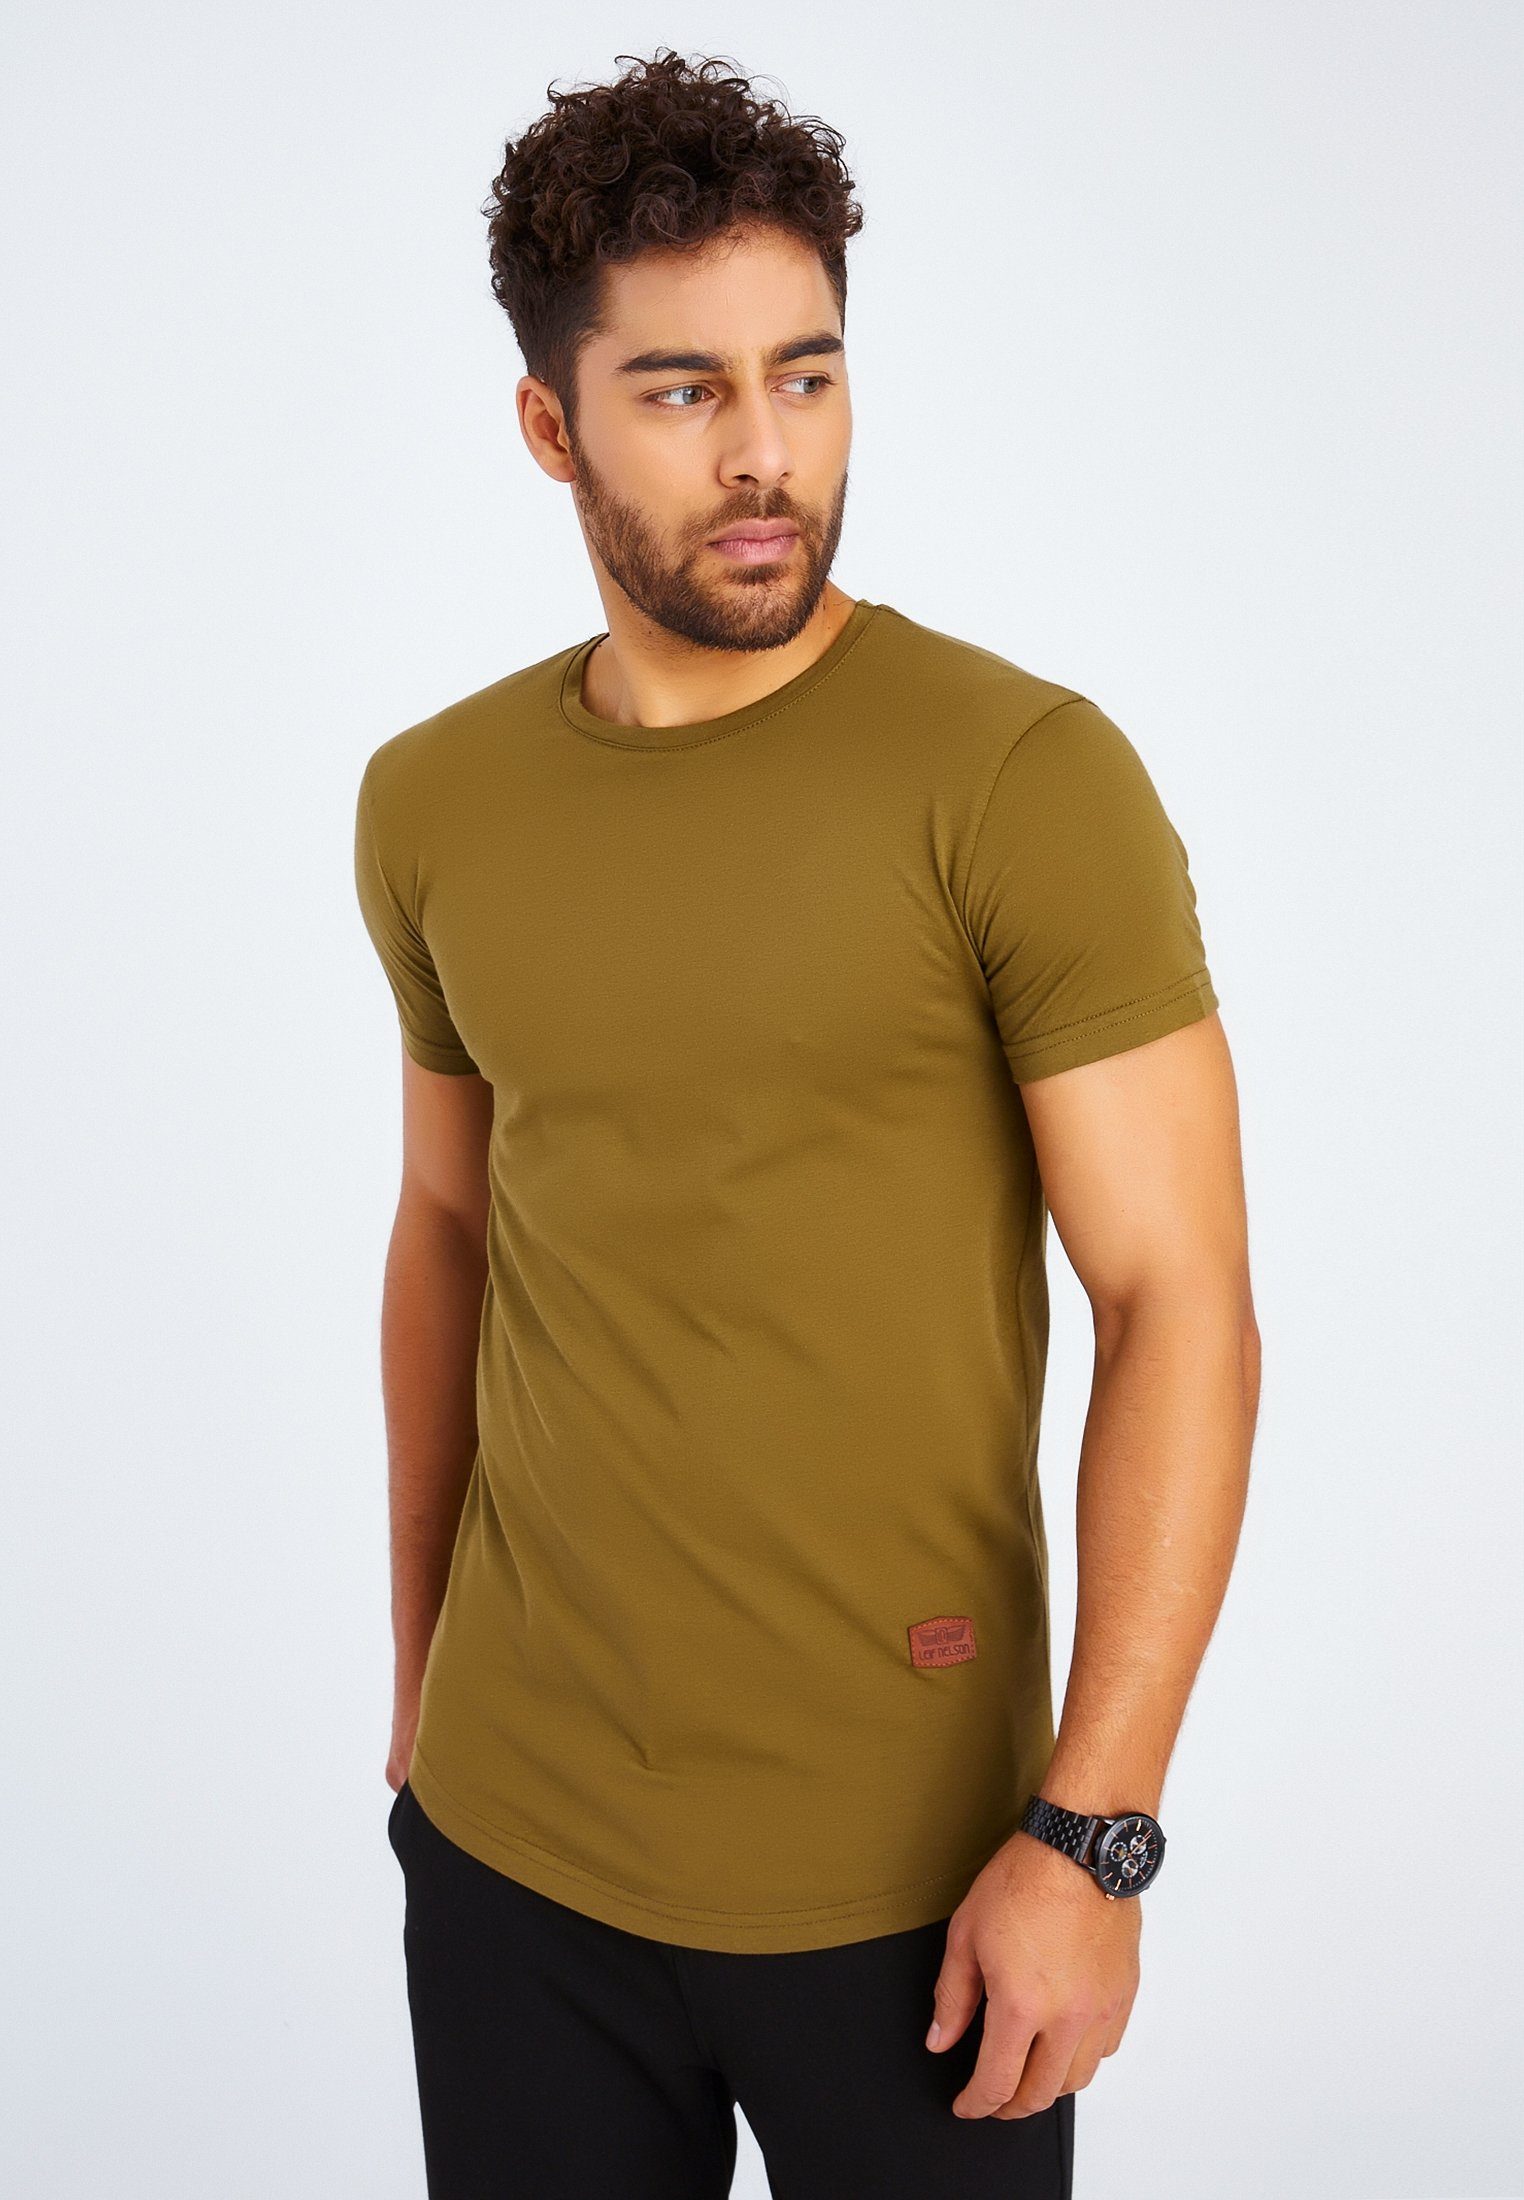 Leif Nelson T-Shirt Herren T-Shirt Rundhals khaki LN-8294